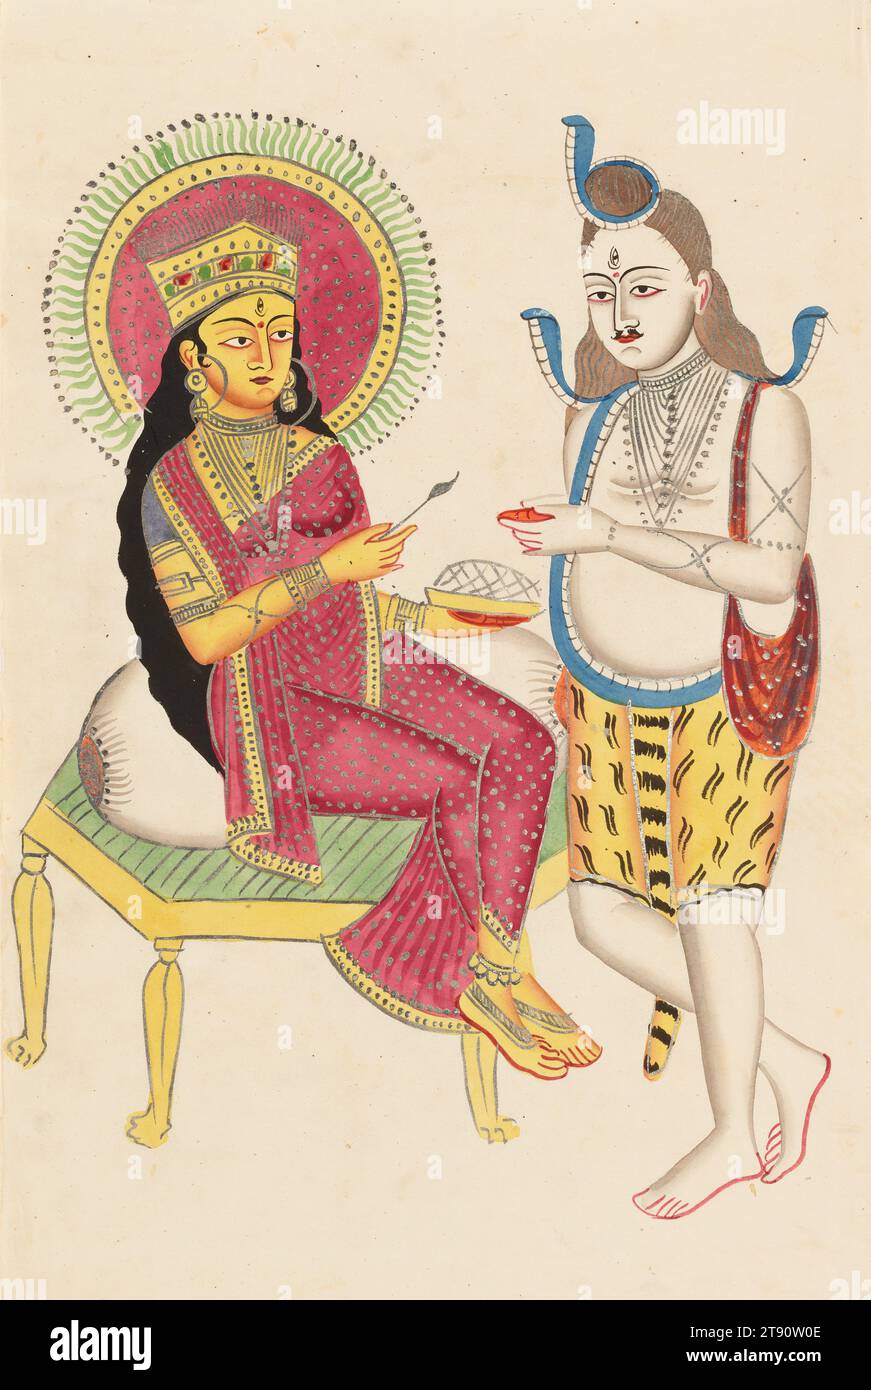 Annapurna Giving Alms to Shiva, 19. Jahrhundert, 17 3/4 x 11 1/16 Zoll. (45,1 x 28,1 cm), Aquarell auf Papier, Indien, 19. Jahrhundert, die Göttin der Körner, Annapurna, bietet ihrer Gemahlin Shiva Nahrung an. Annapurna ist reich gekleidet mit einem gepunkteten roten Sari und einer Krone, während Shiva in starkem Kontrast zu ihrer Pracht steht, mit drei gedrehten Kobras um sein verfilztes Haar. Eine Schultertasche und ein Tigerfell-Tigerfell weisen ihn als in seiner unheilvollen Form, und seine Handflächen werden nach dem Essen ausgestreckt Stockfoto